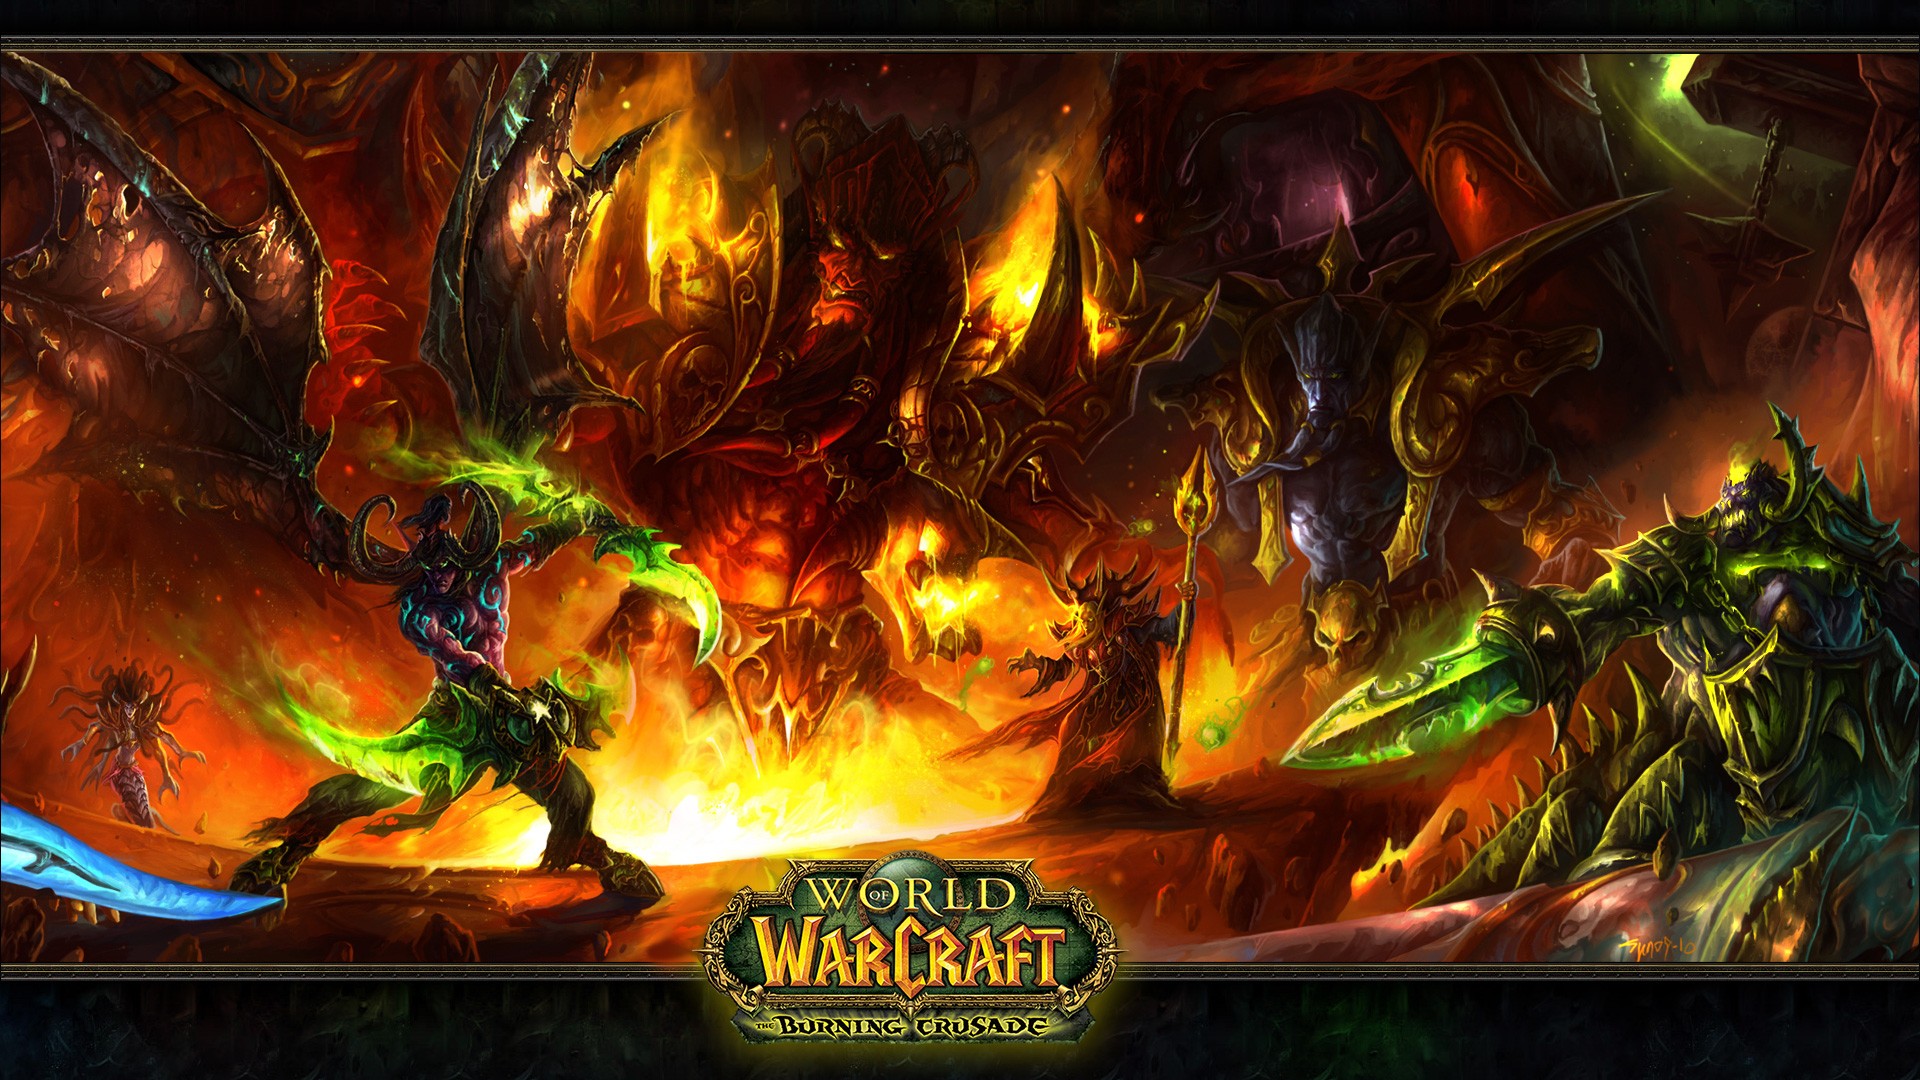 World Of Warcraft Wallpaper Hd - 1920x1080 Wallpaper 